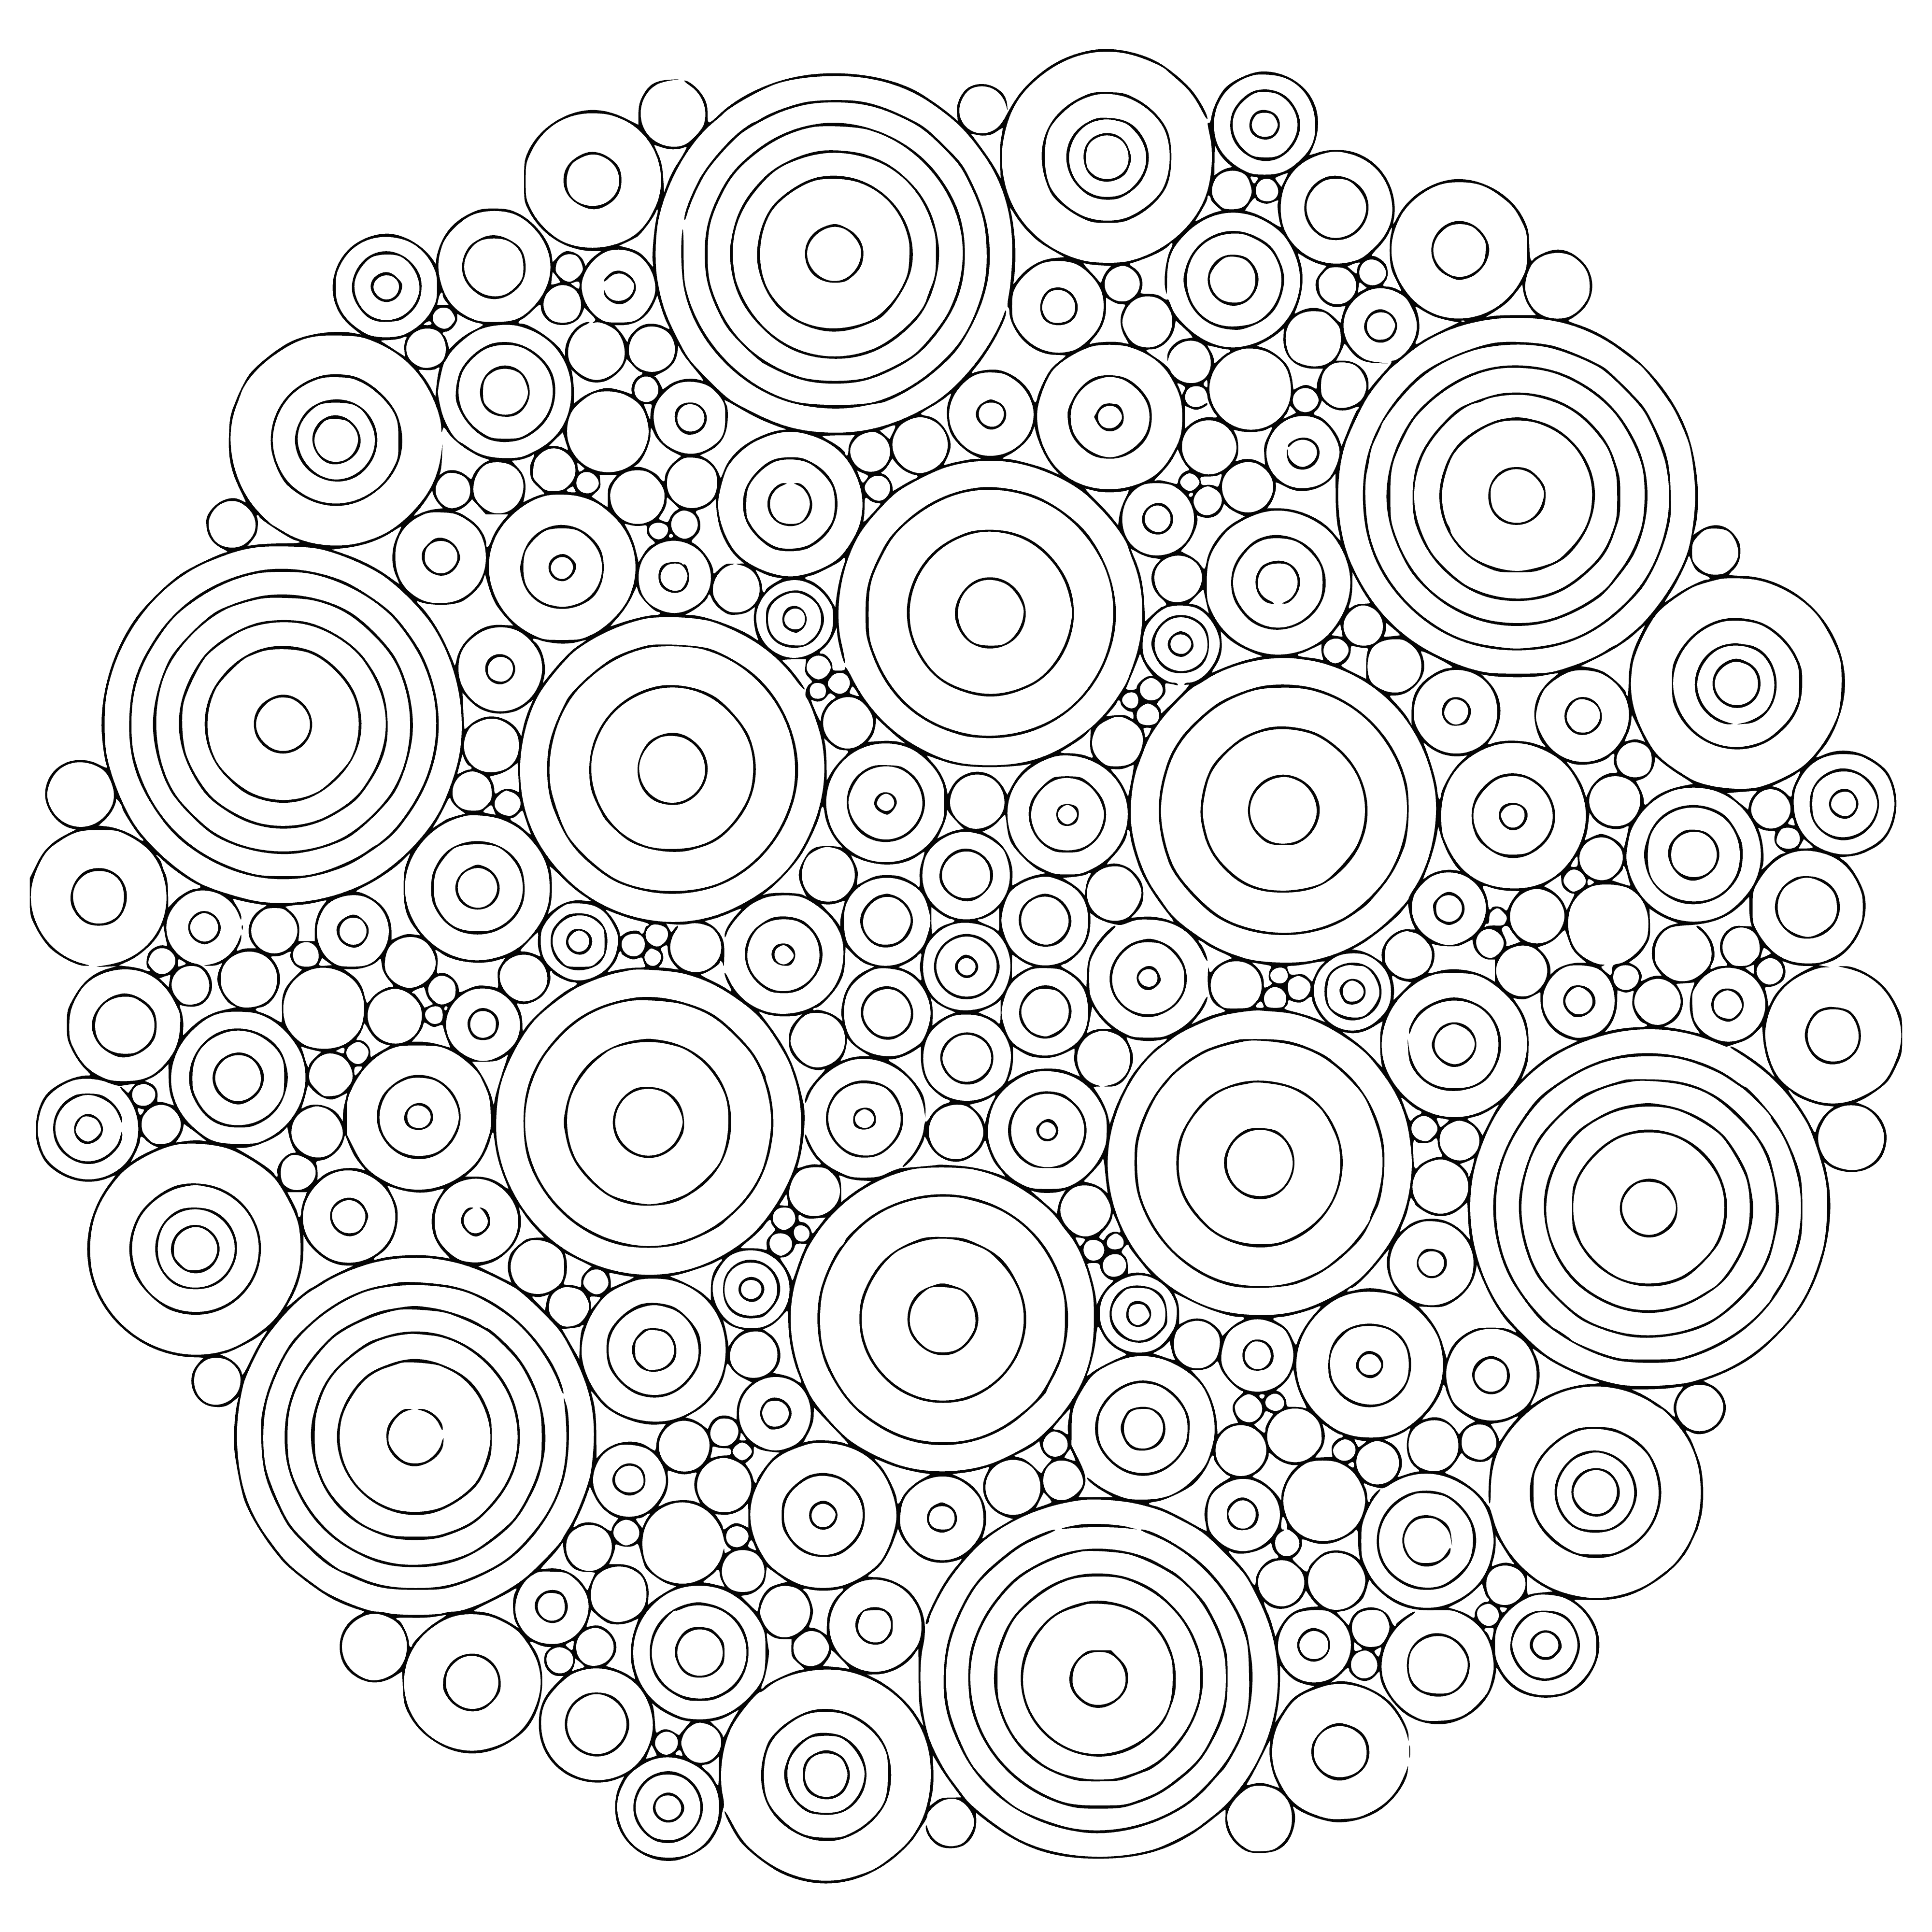 Circular mandala coloring page